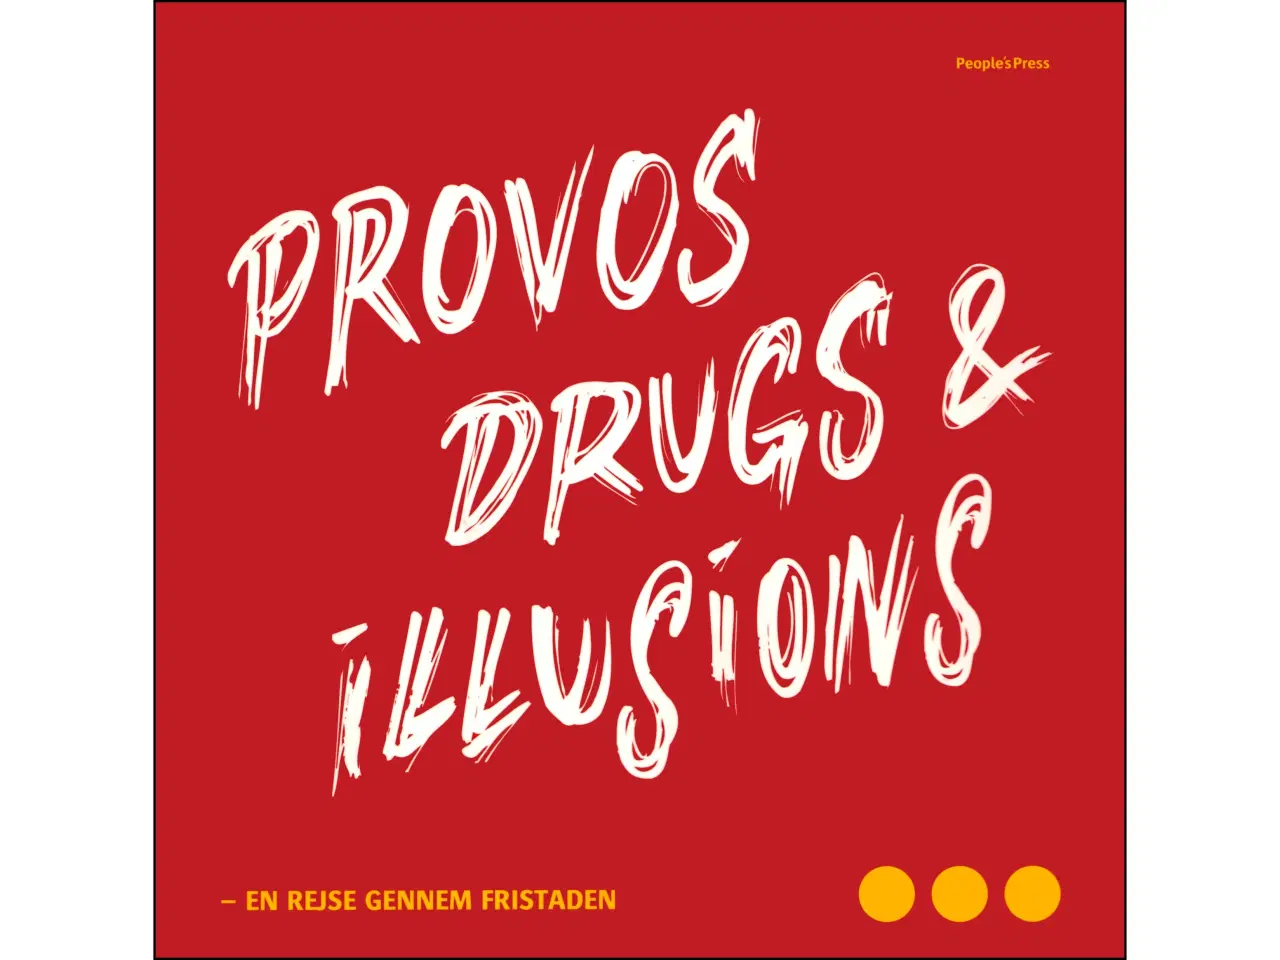 Billede 1 - Provos, drugs & illusions - rejse gennem Fristaden